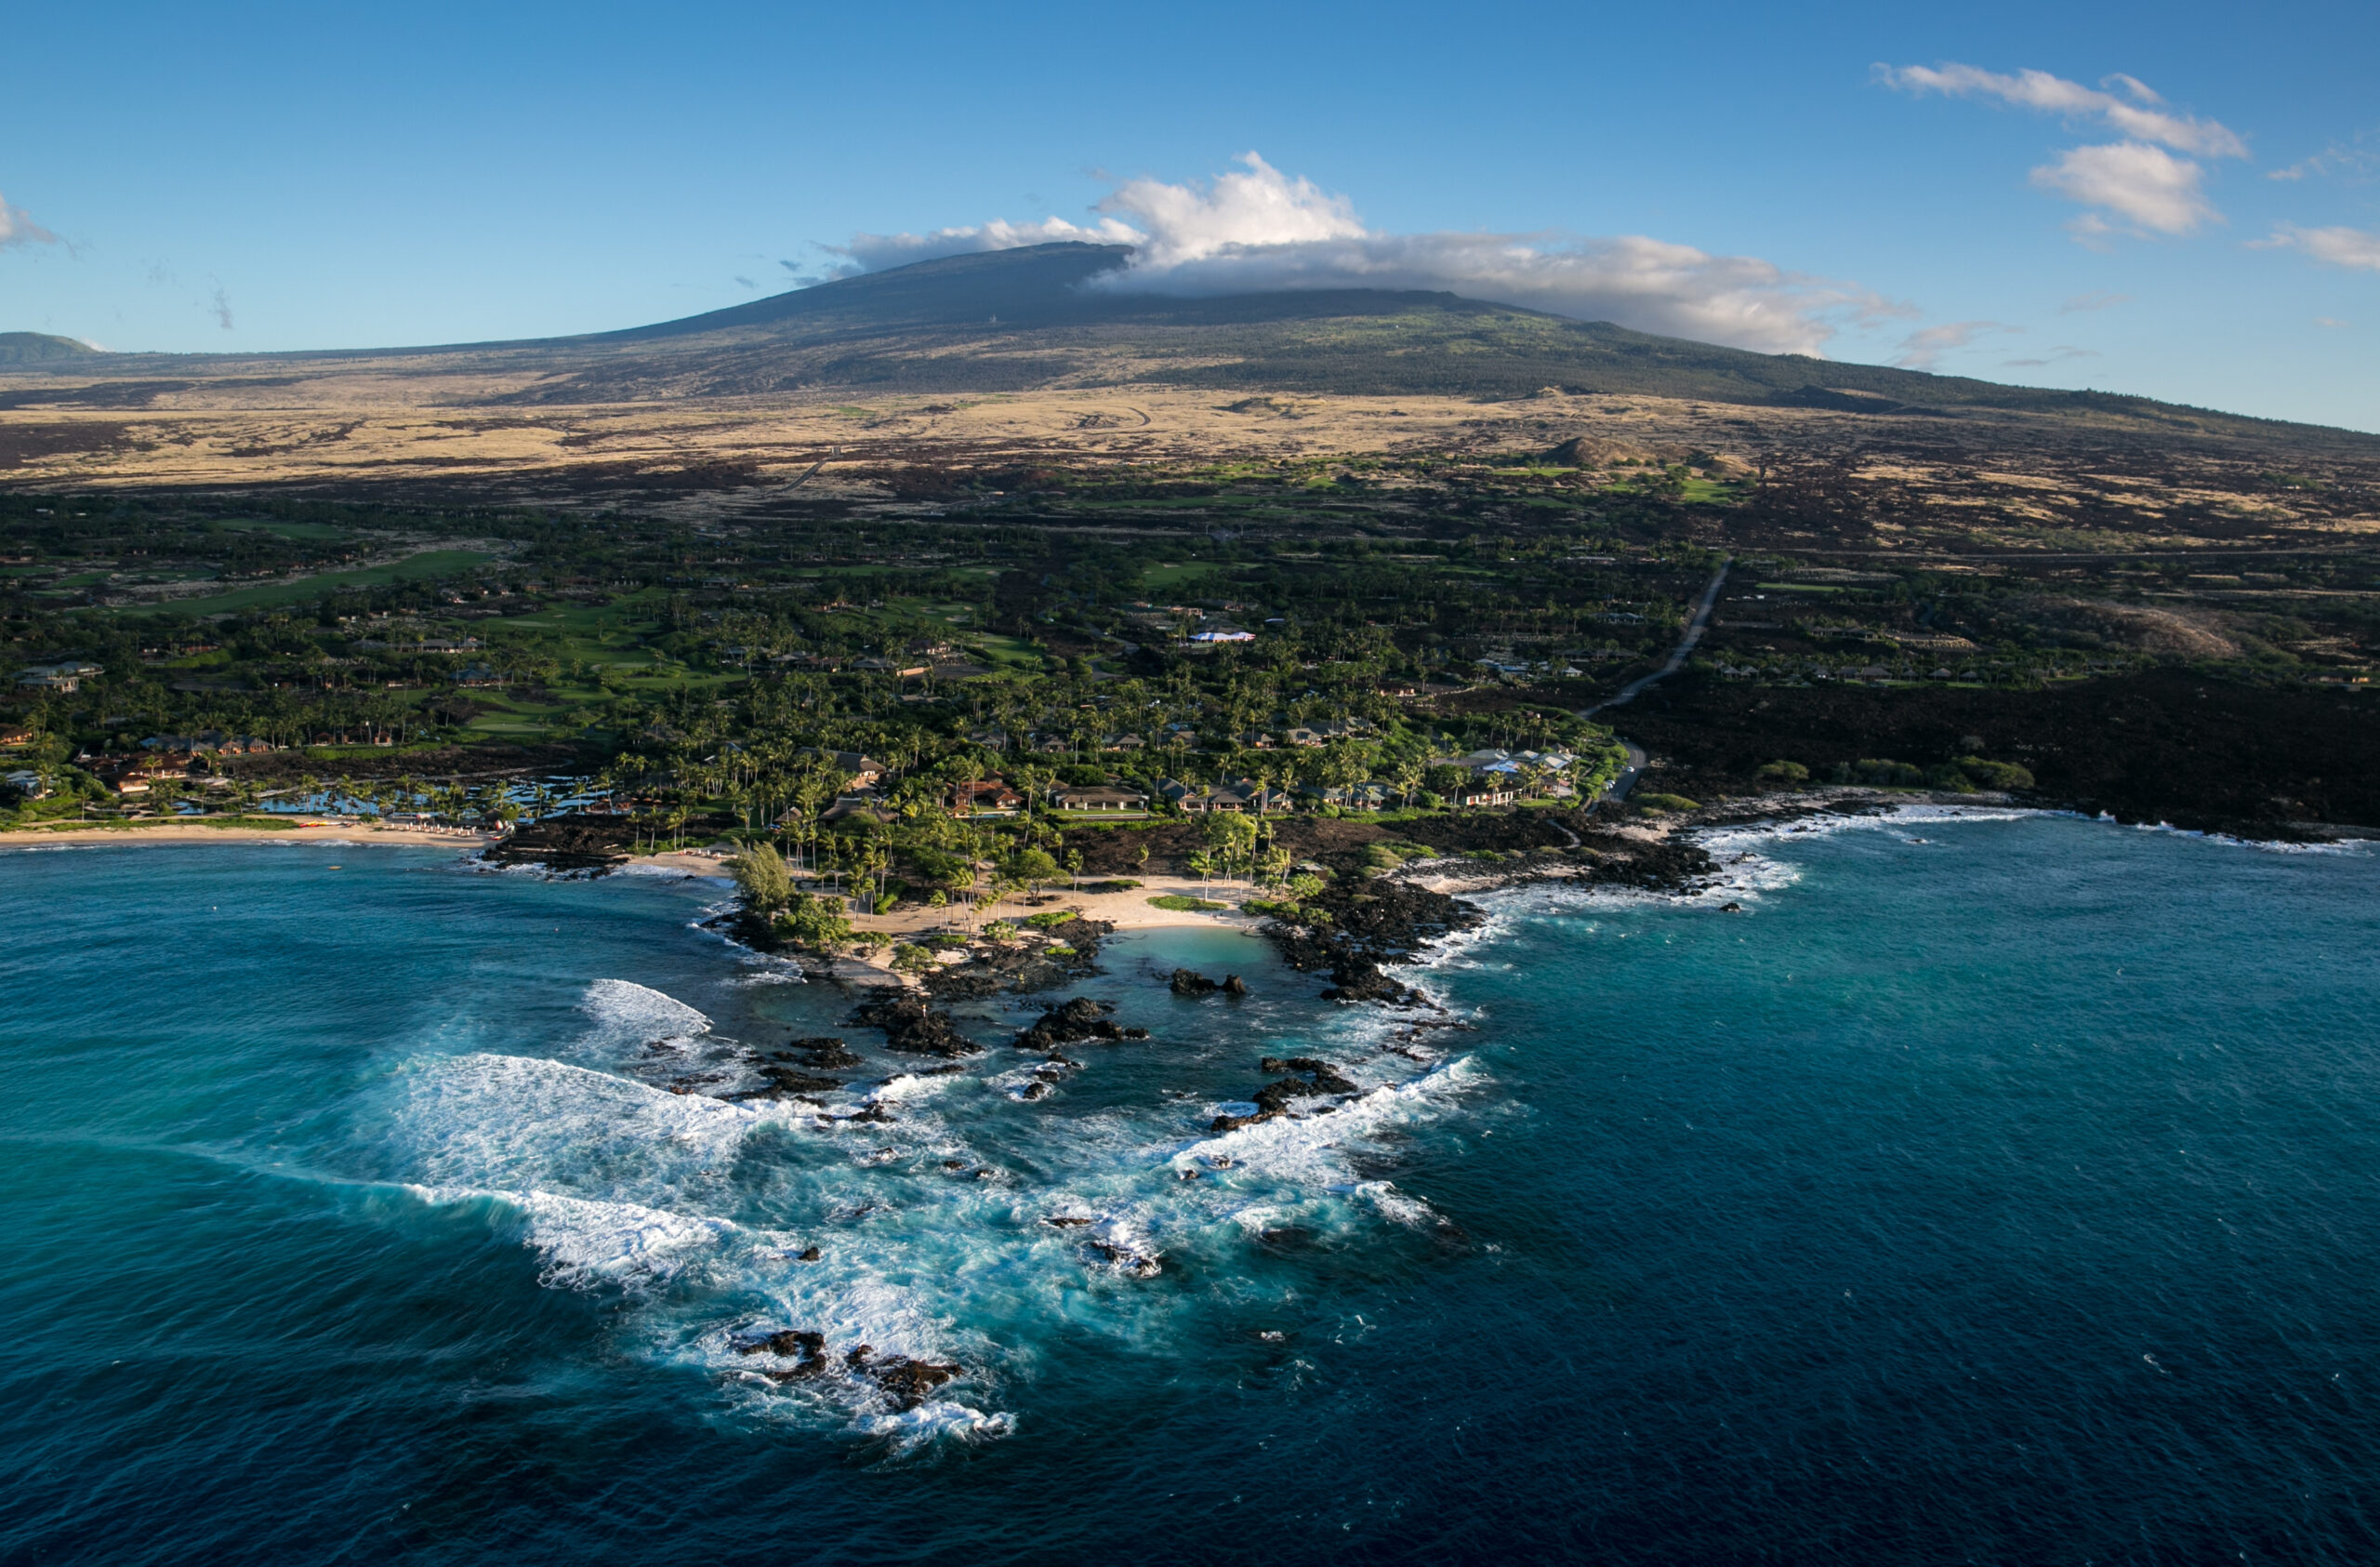 Científicos estiman que el volcán Mauna Loa tiene entre 700.000 y un millón de años